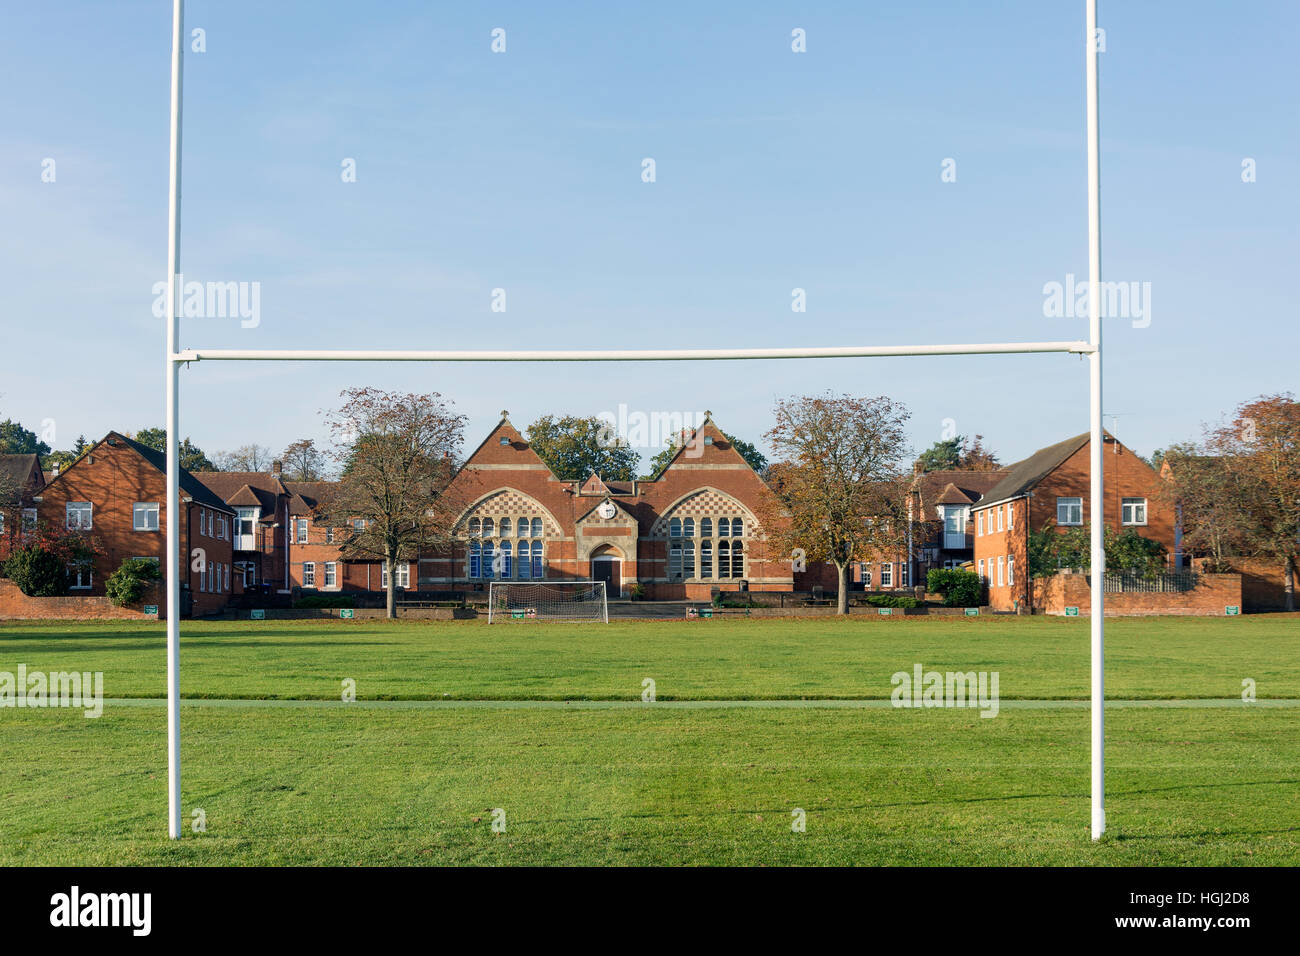 Edifici scolastici da campo da rugby, Gordon's School, West End, Surrey, England, Regno Unito Foto Stock